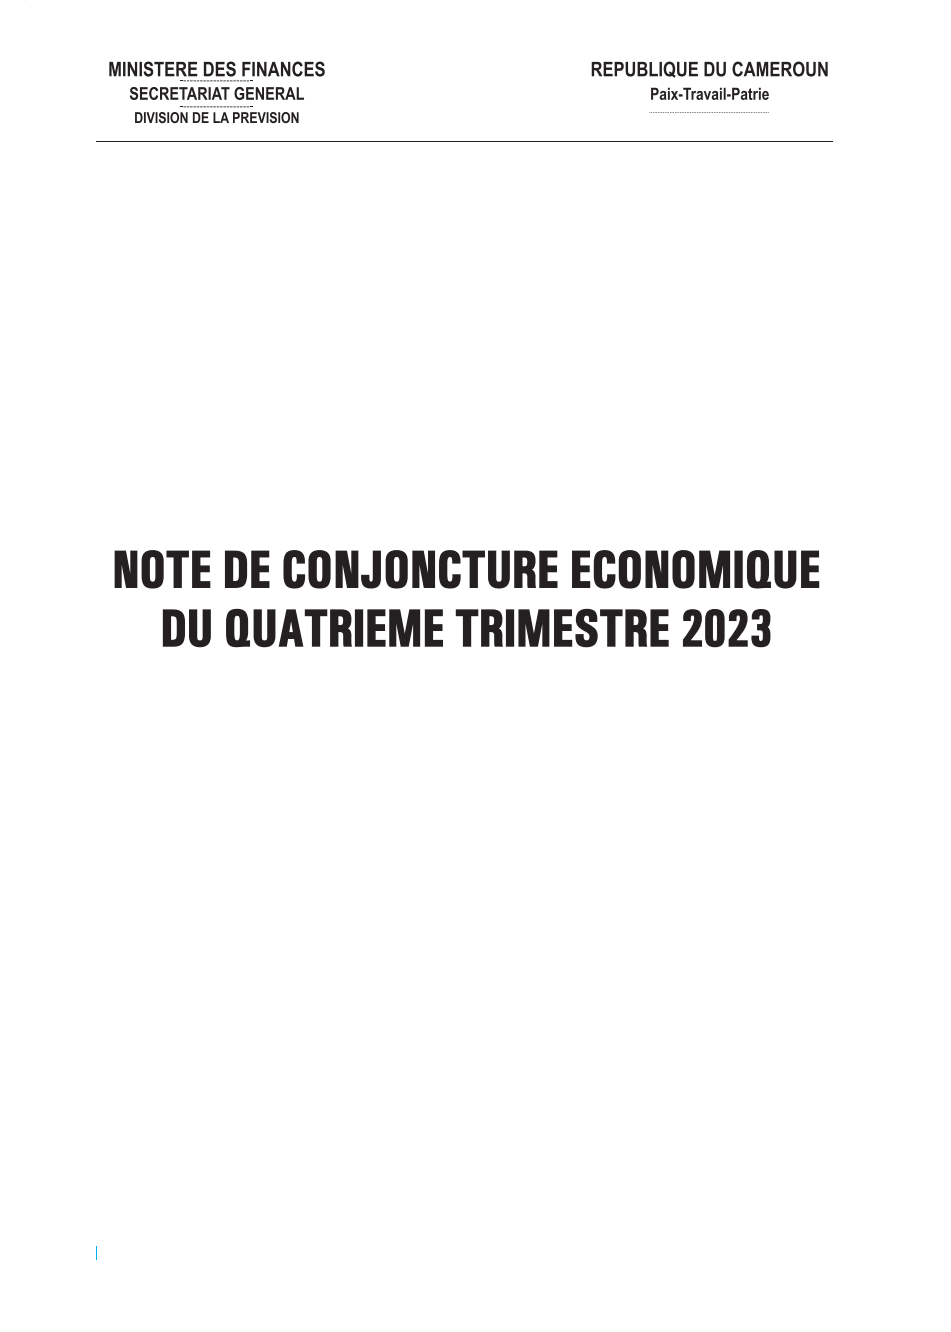 Note de conjoncture économique du quatrième trimestre 2023 au format pdf